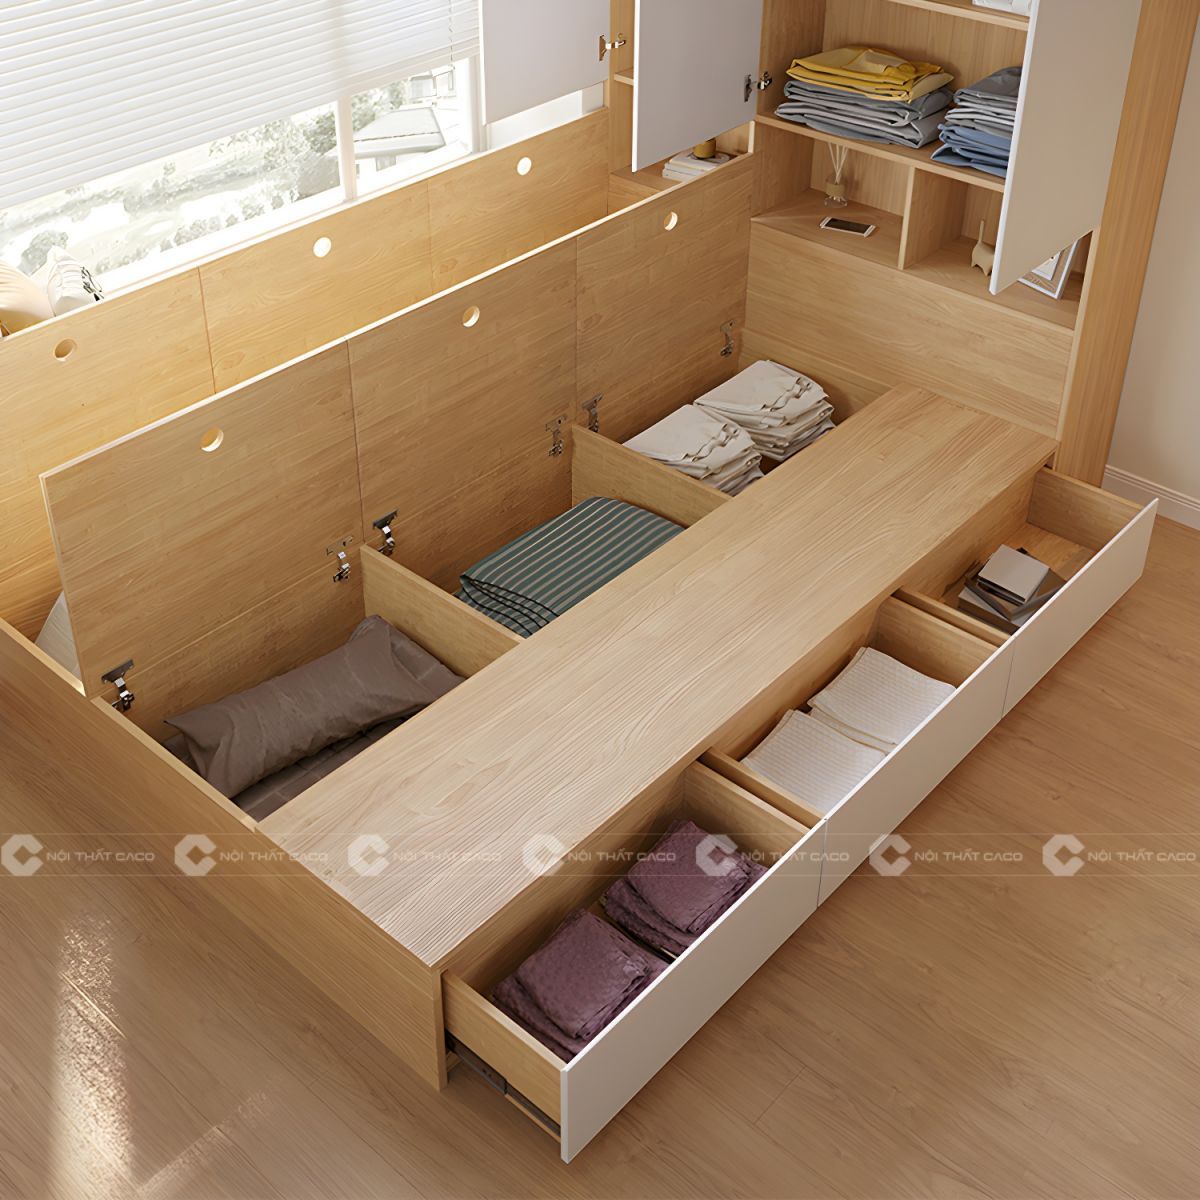 Giường ngủ gỗ công nghiệp có ngăn chứa đồ rộng rãi